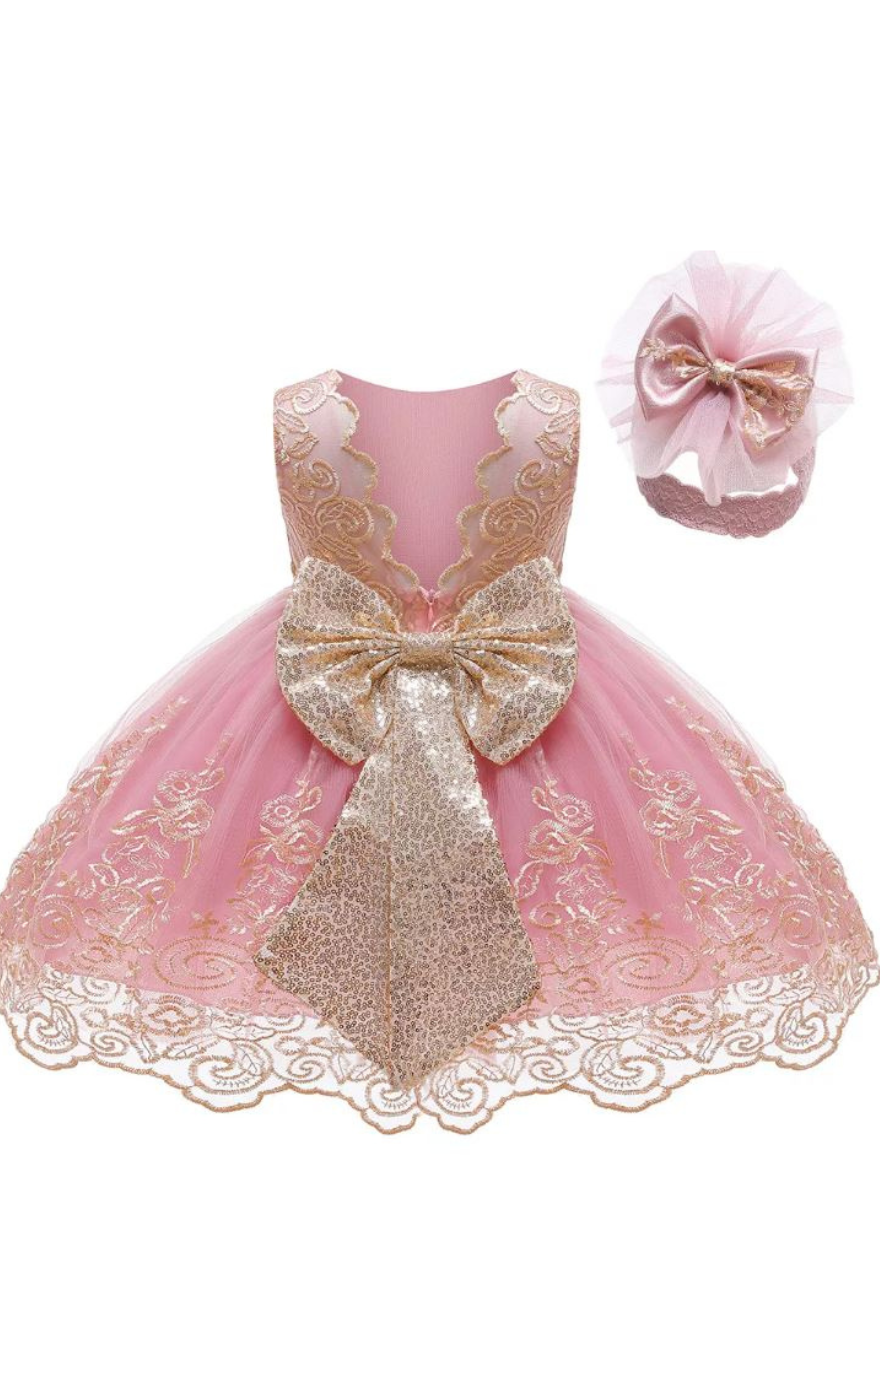 Maya Baby Dress - Rose Pink/Gold